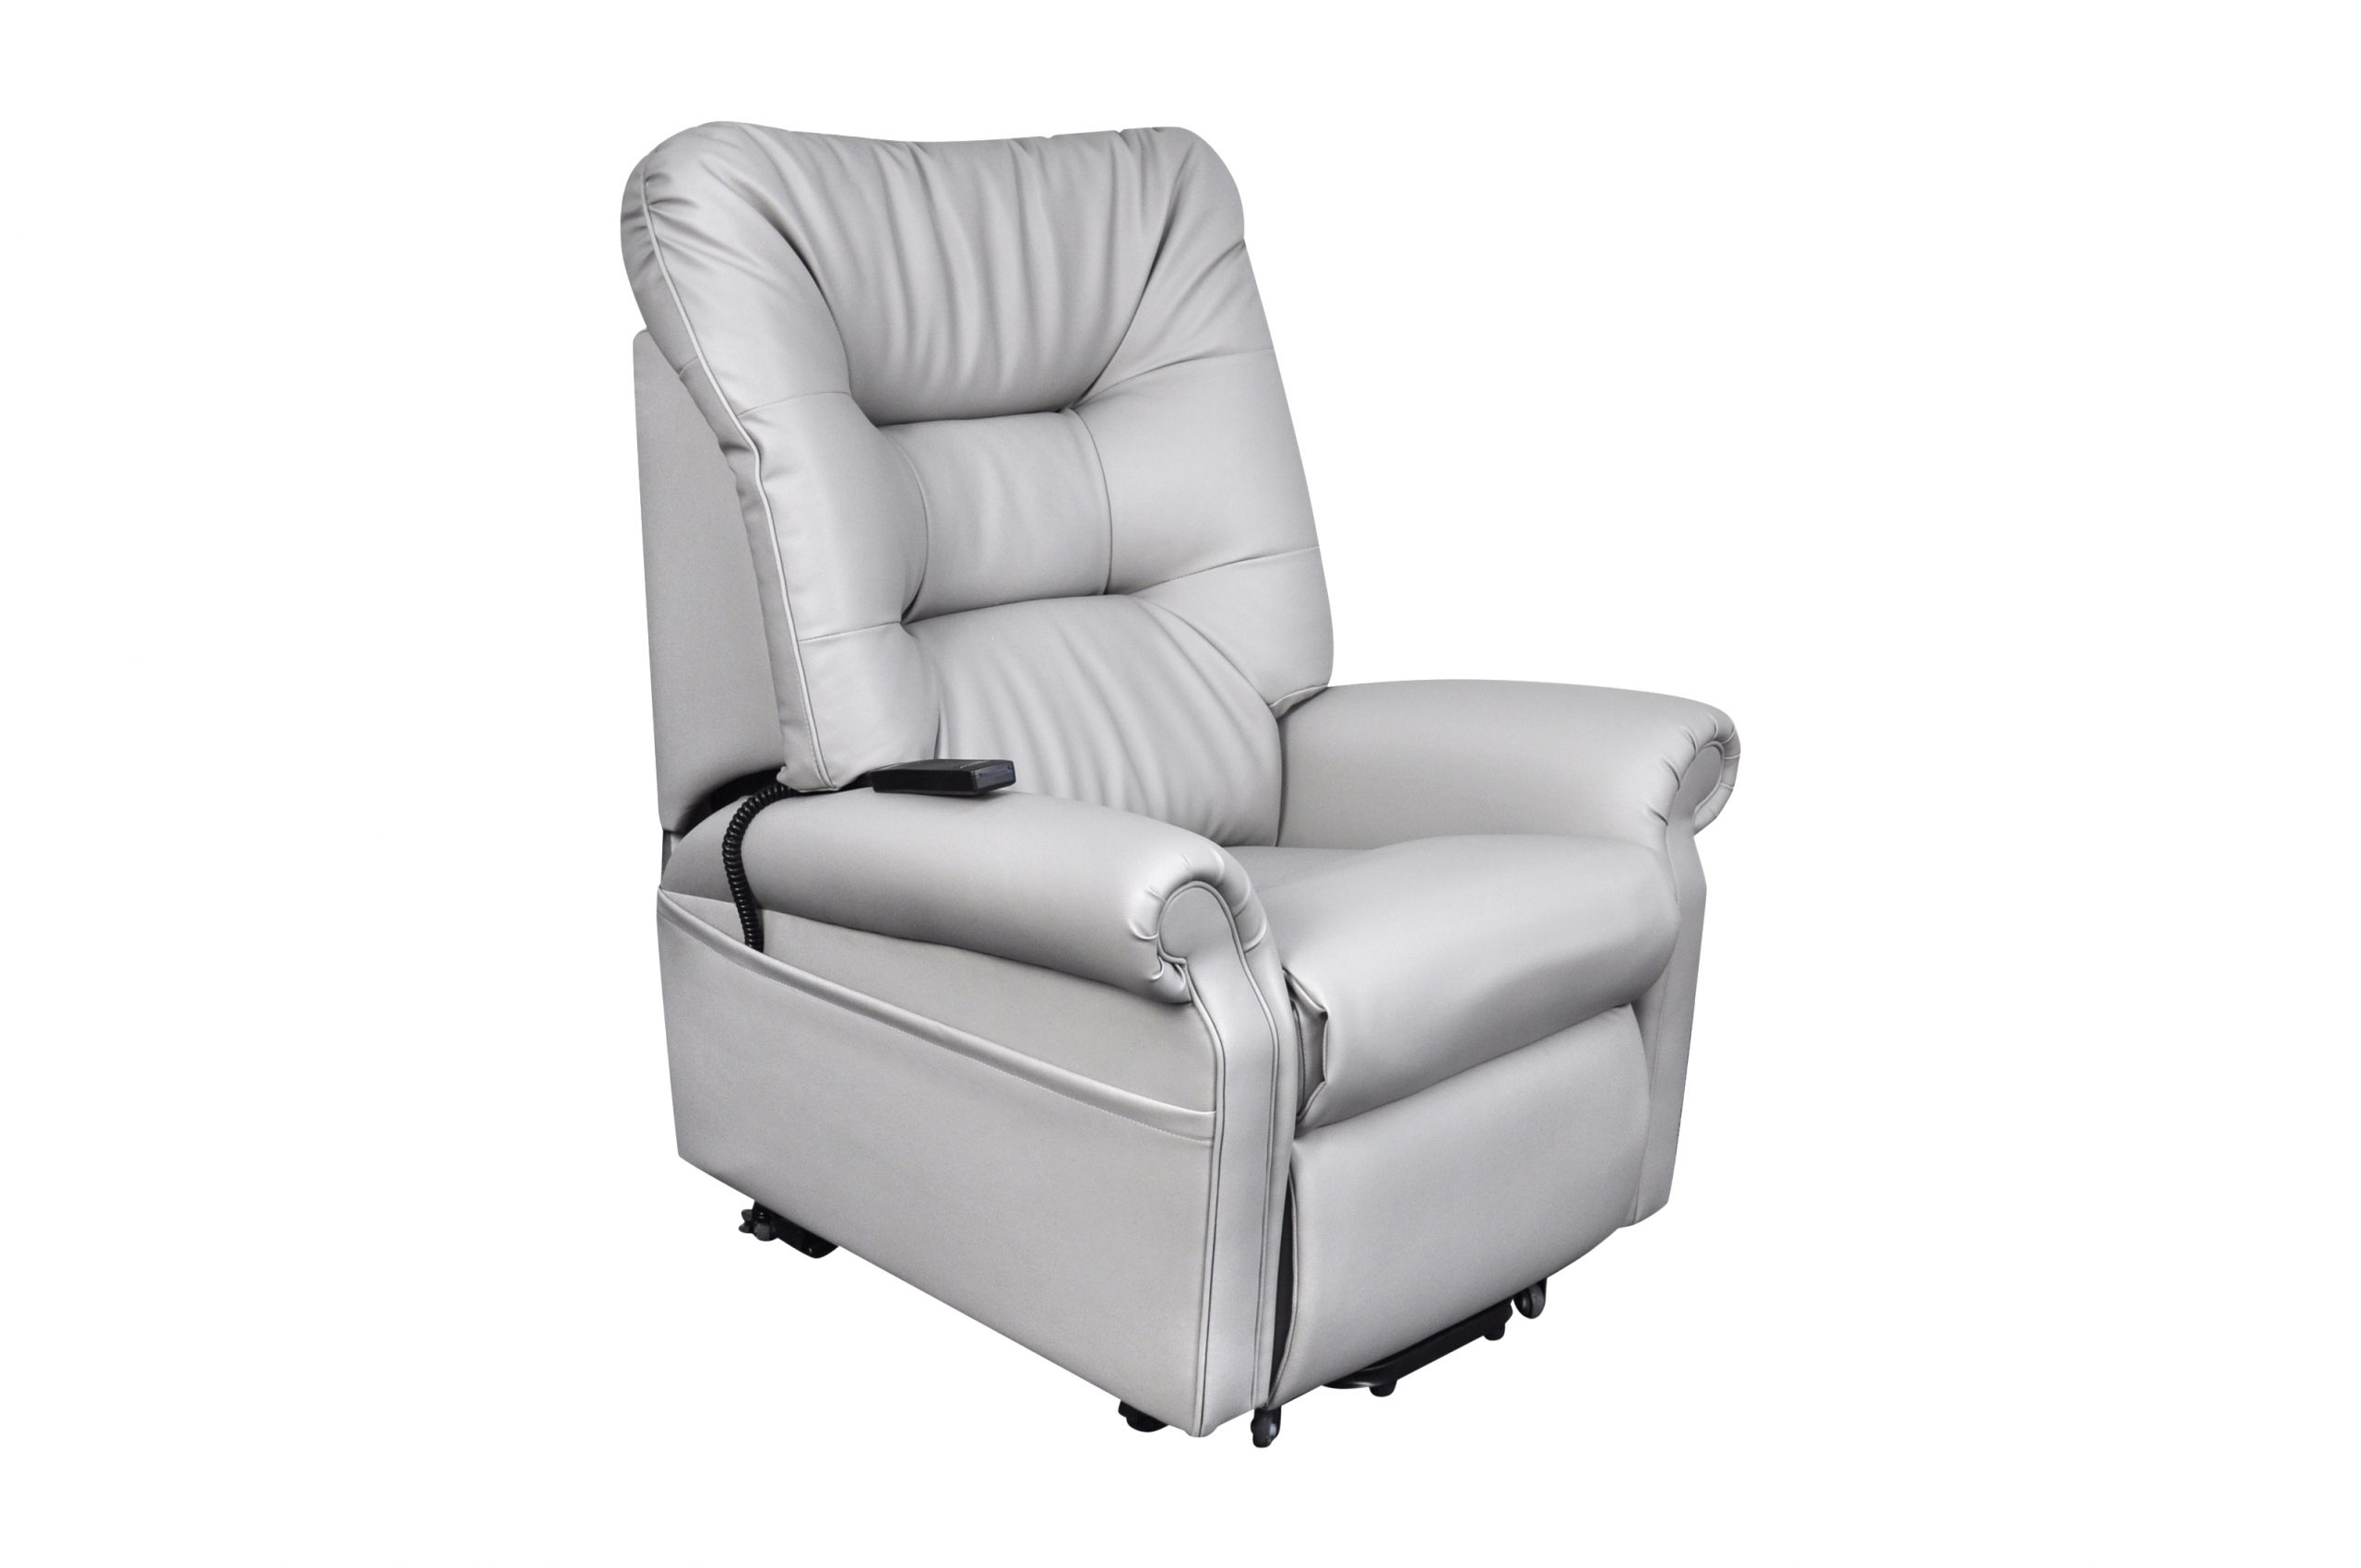  Monroe - Wallglider Lift Recliner Chair (Medium)